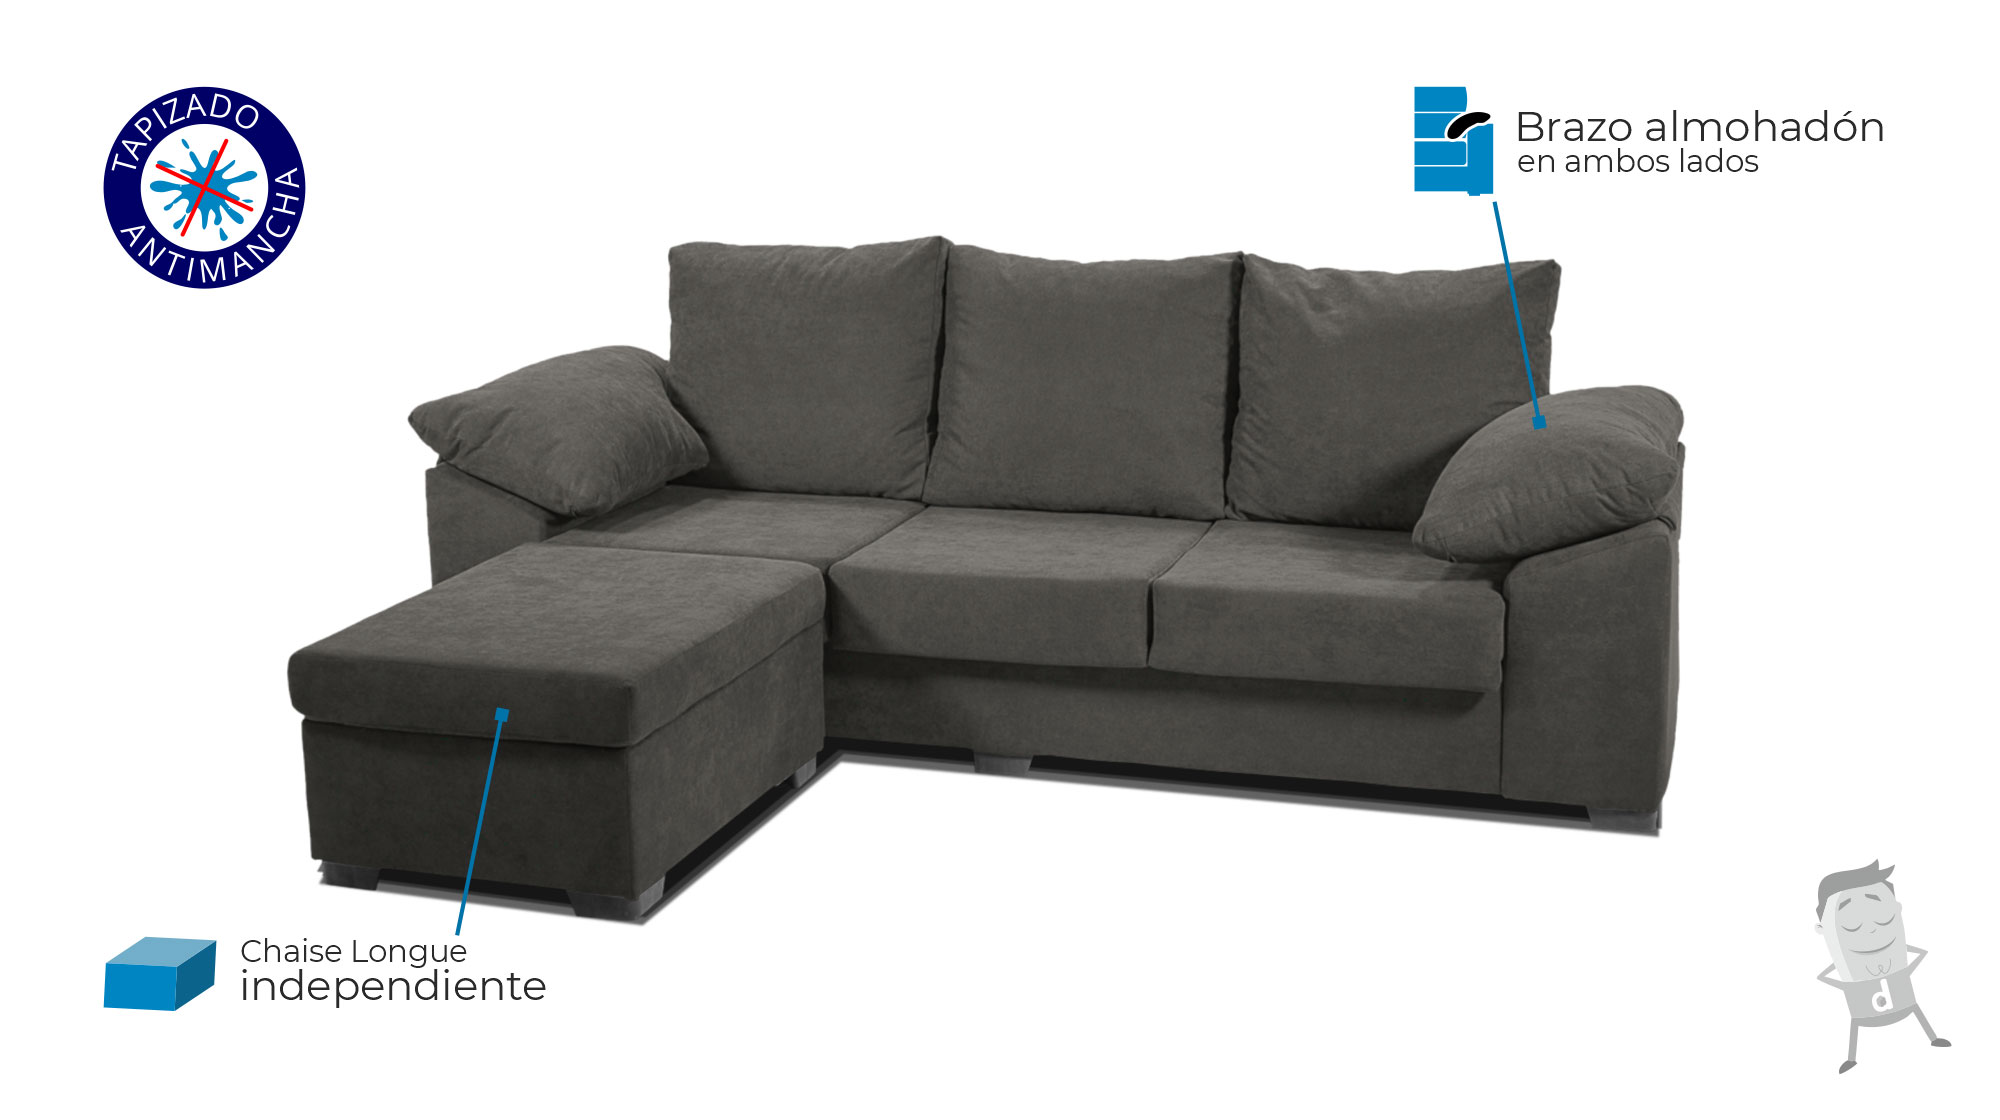 Sofa Chaise Longue barato Ceo mejor precio Canarias Dormitorum 2